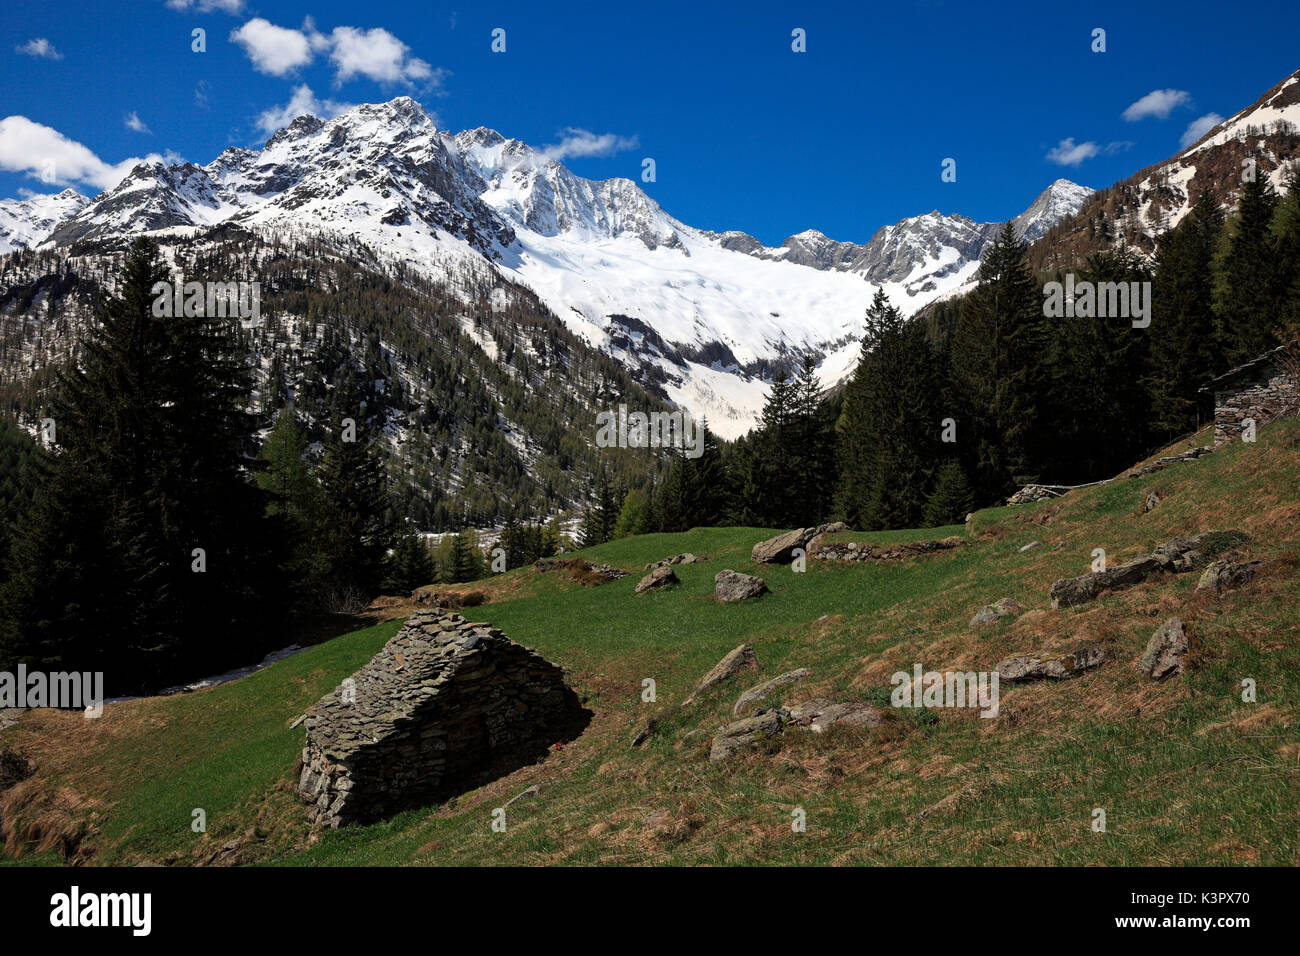 Vista dal sentiero da Chiareggio al Passo del Muretto, con l'imponente Monte Disgrazia, Valmalenco, Sondrio, Lombardia, Italia Foto Stock